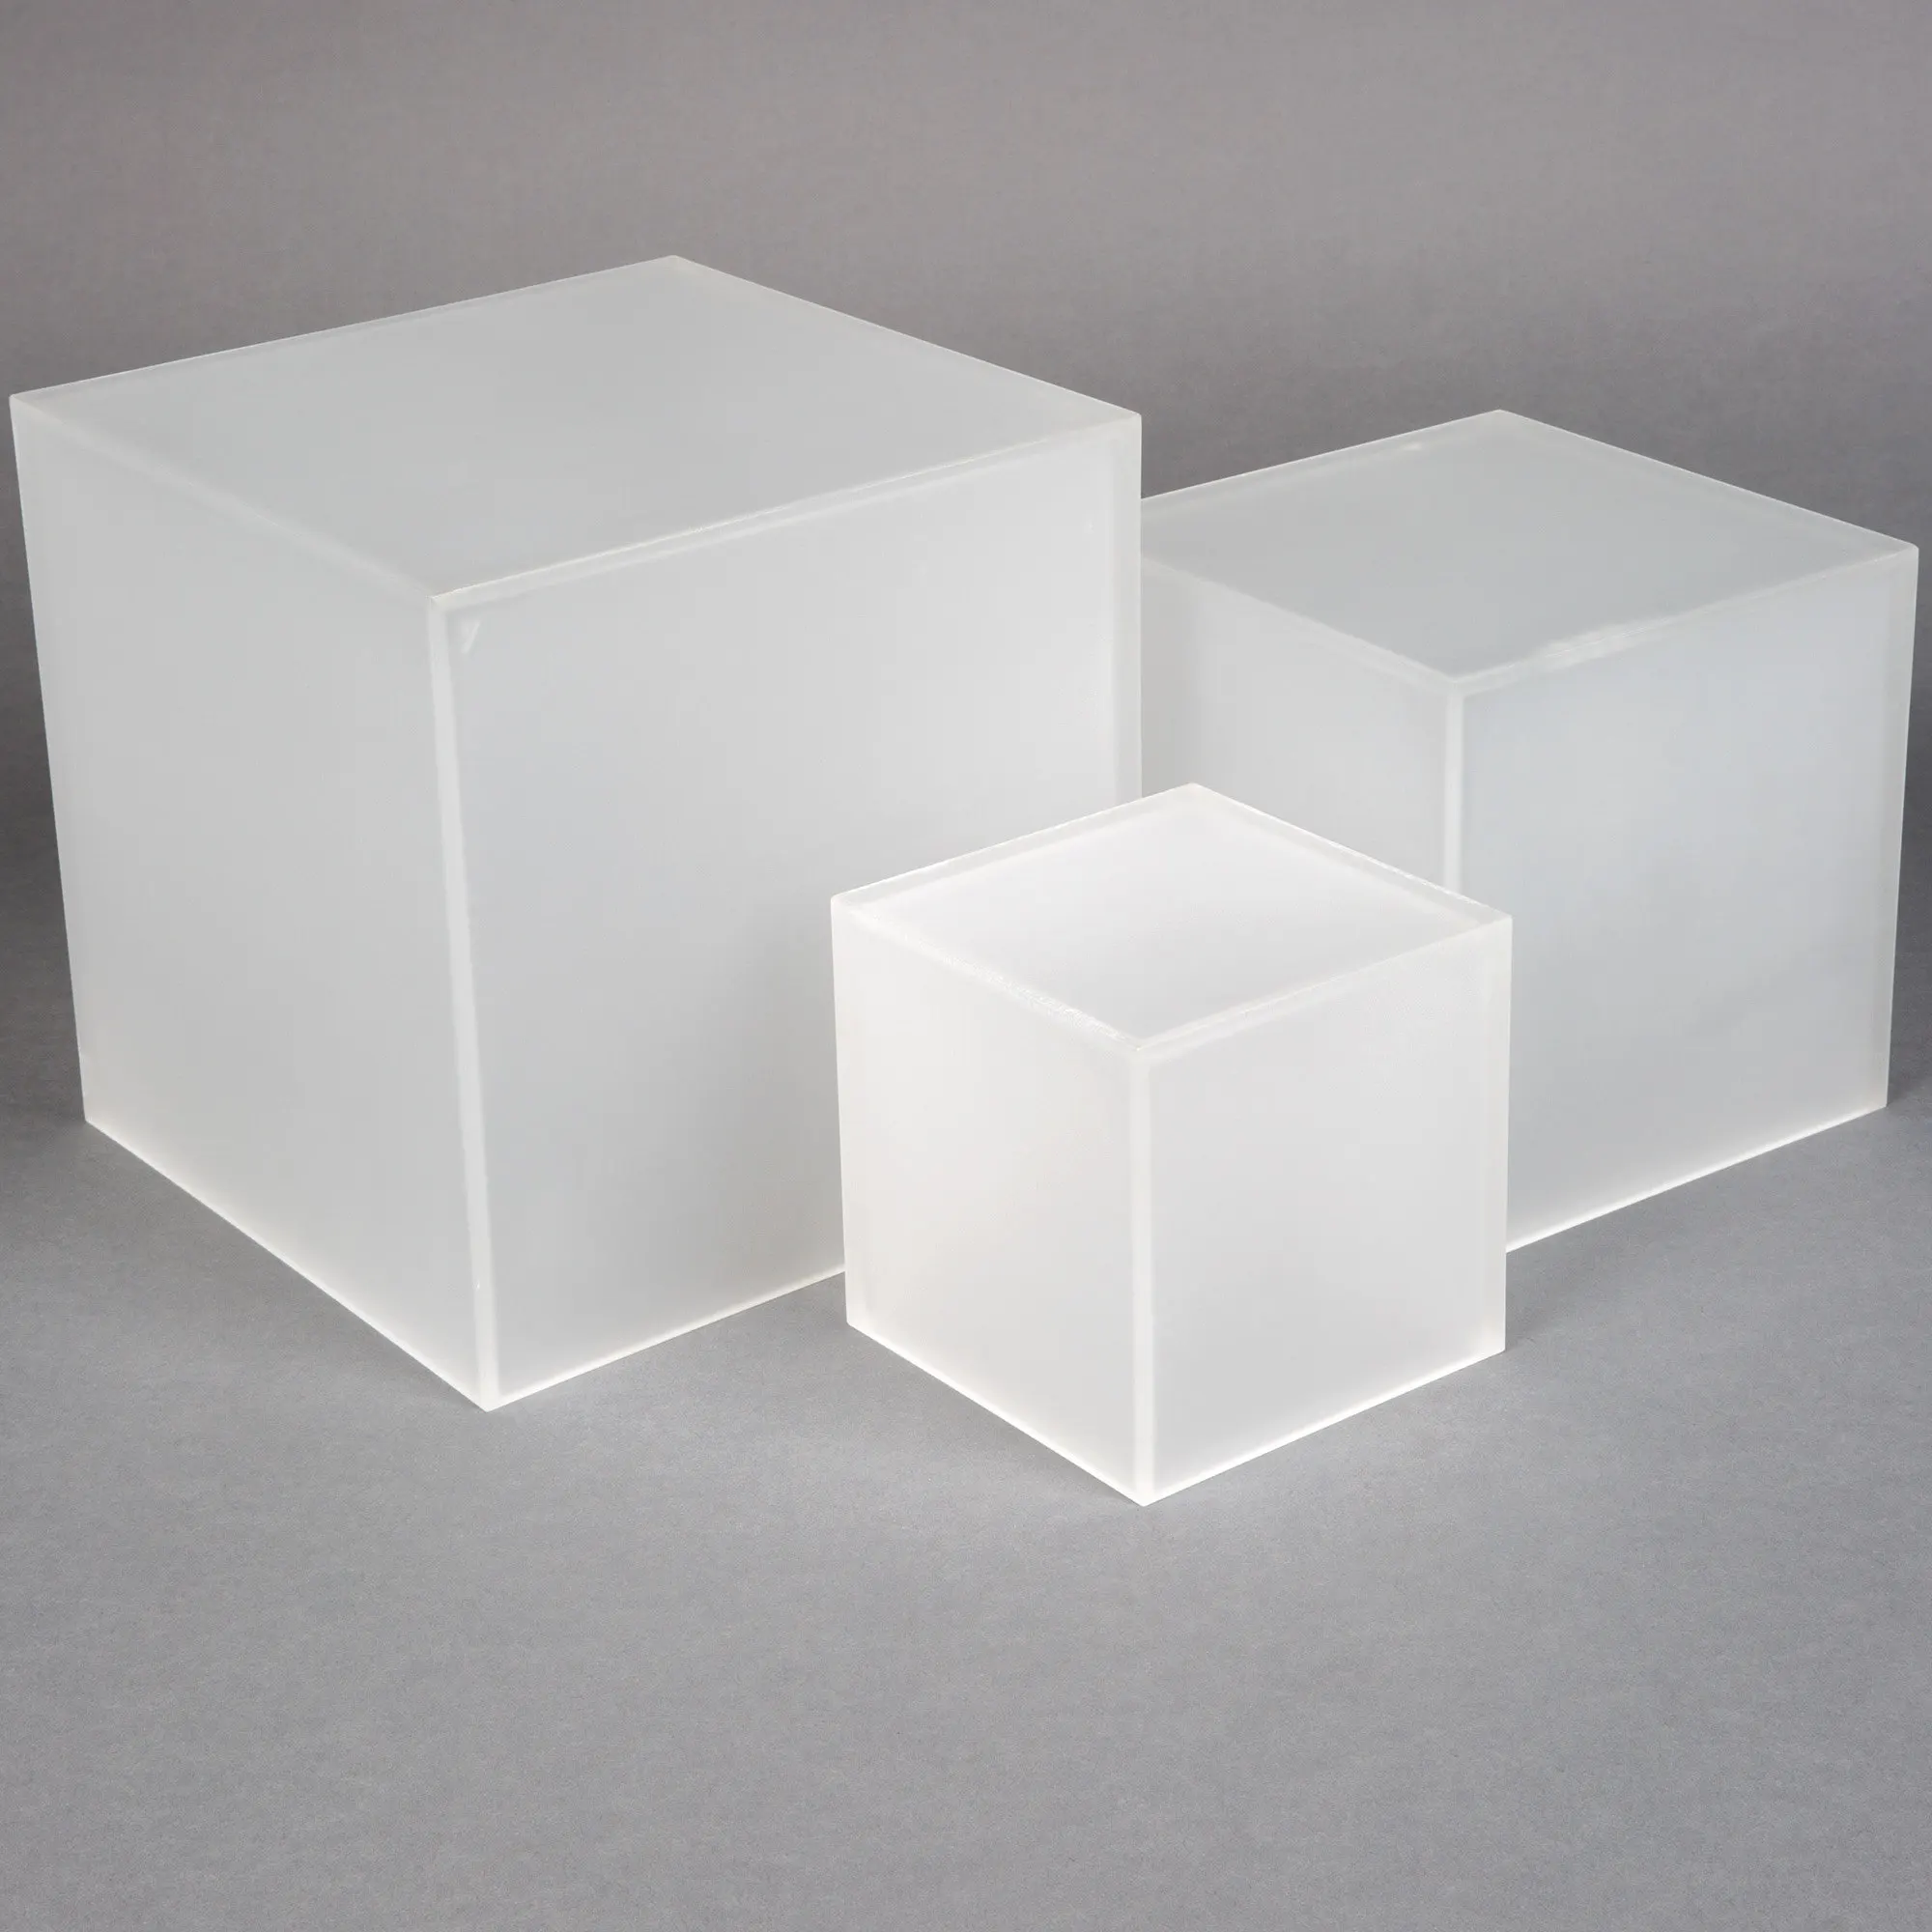 Reg kz. Акриловый куб 15х15х15см. Куб из оргстекла. Прозрачный куб из акрила. Пластмассовый куб.